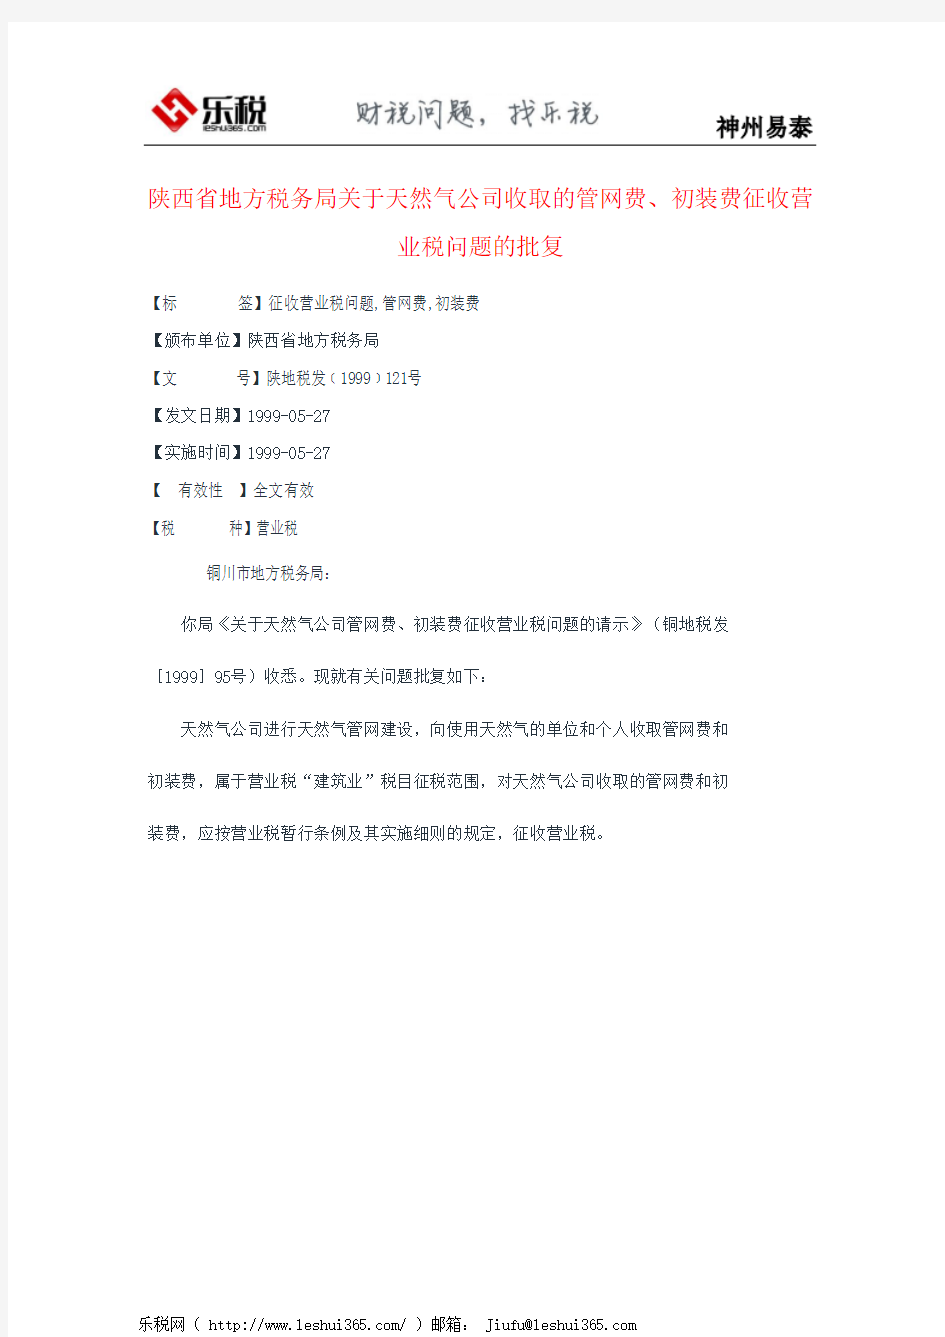 陕西省地方税务局关于天然气公司收取的管网费、初装费征收营业税